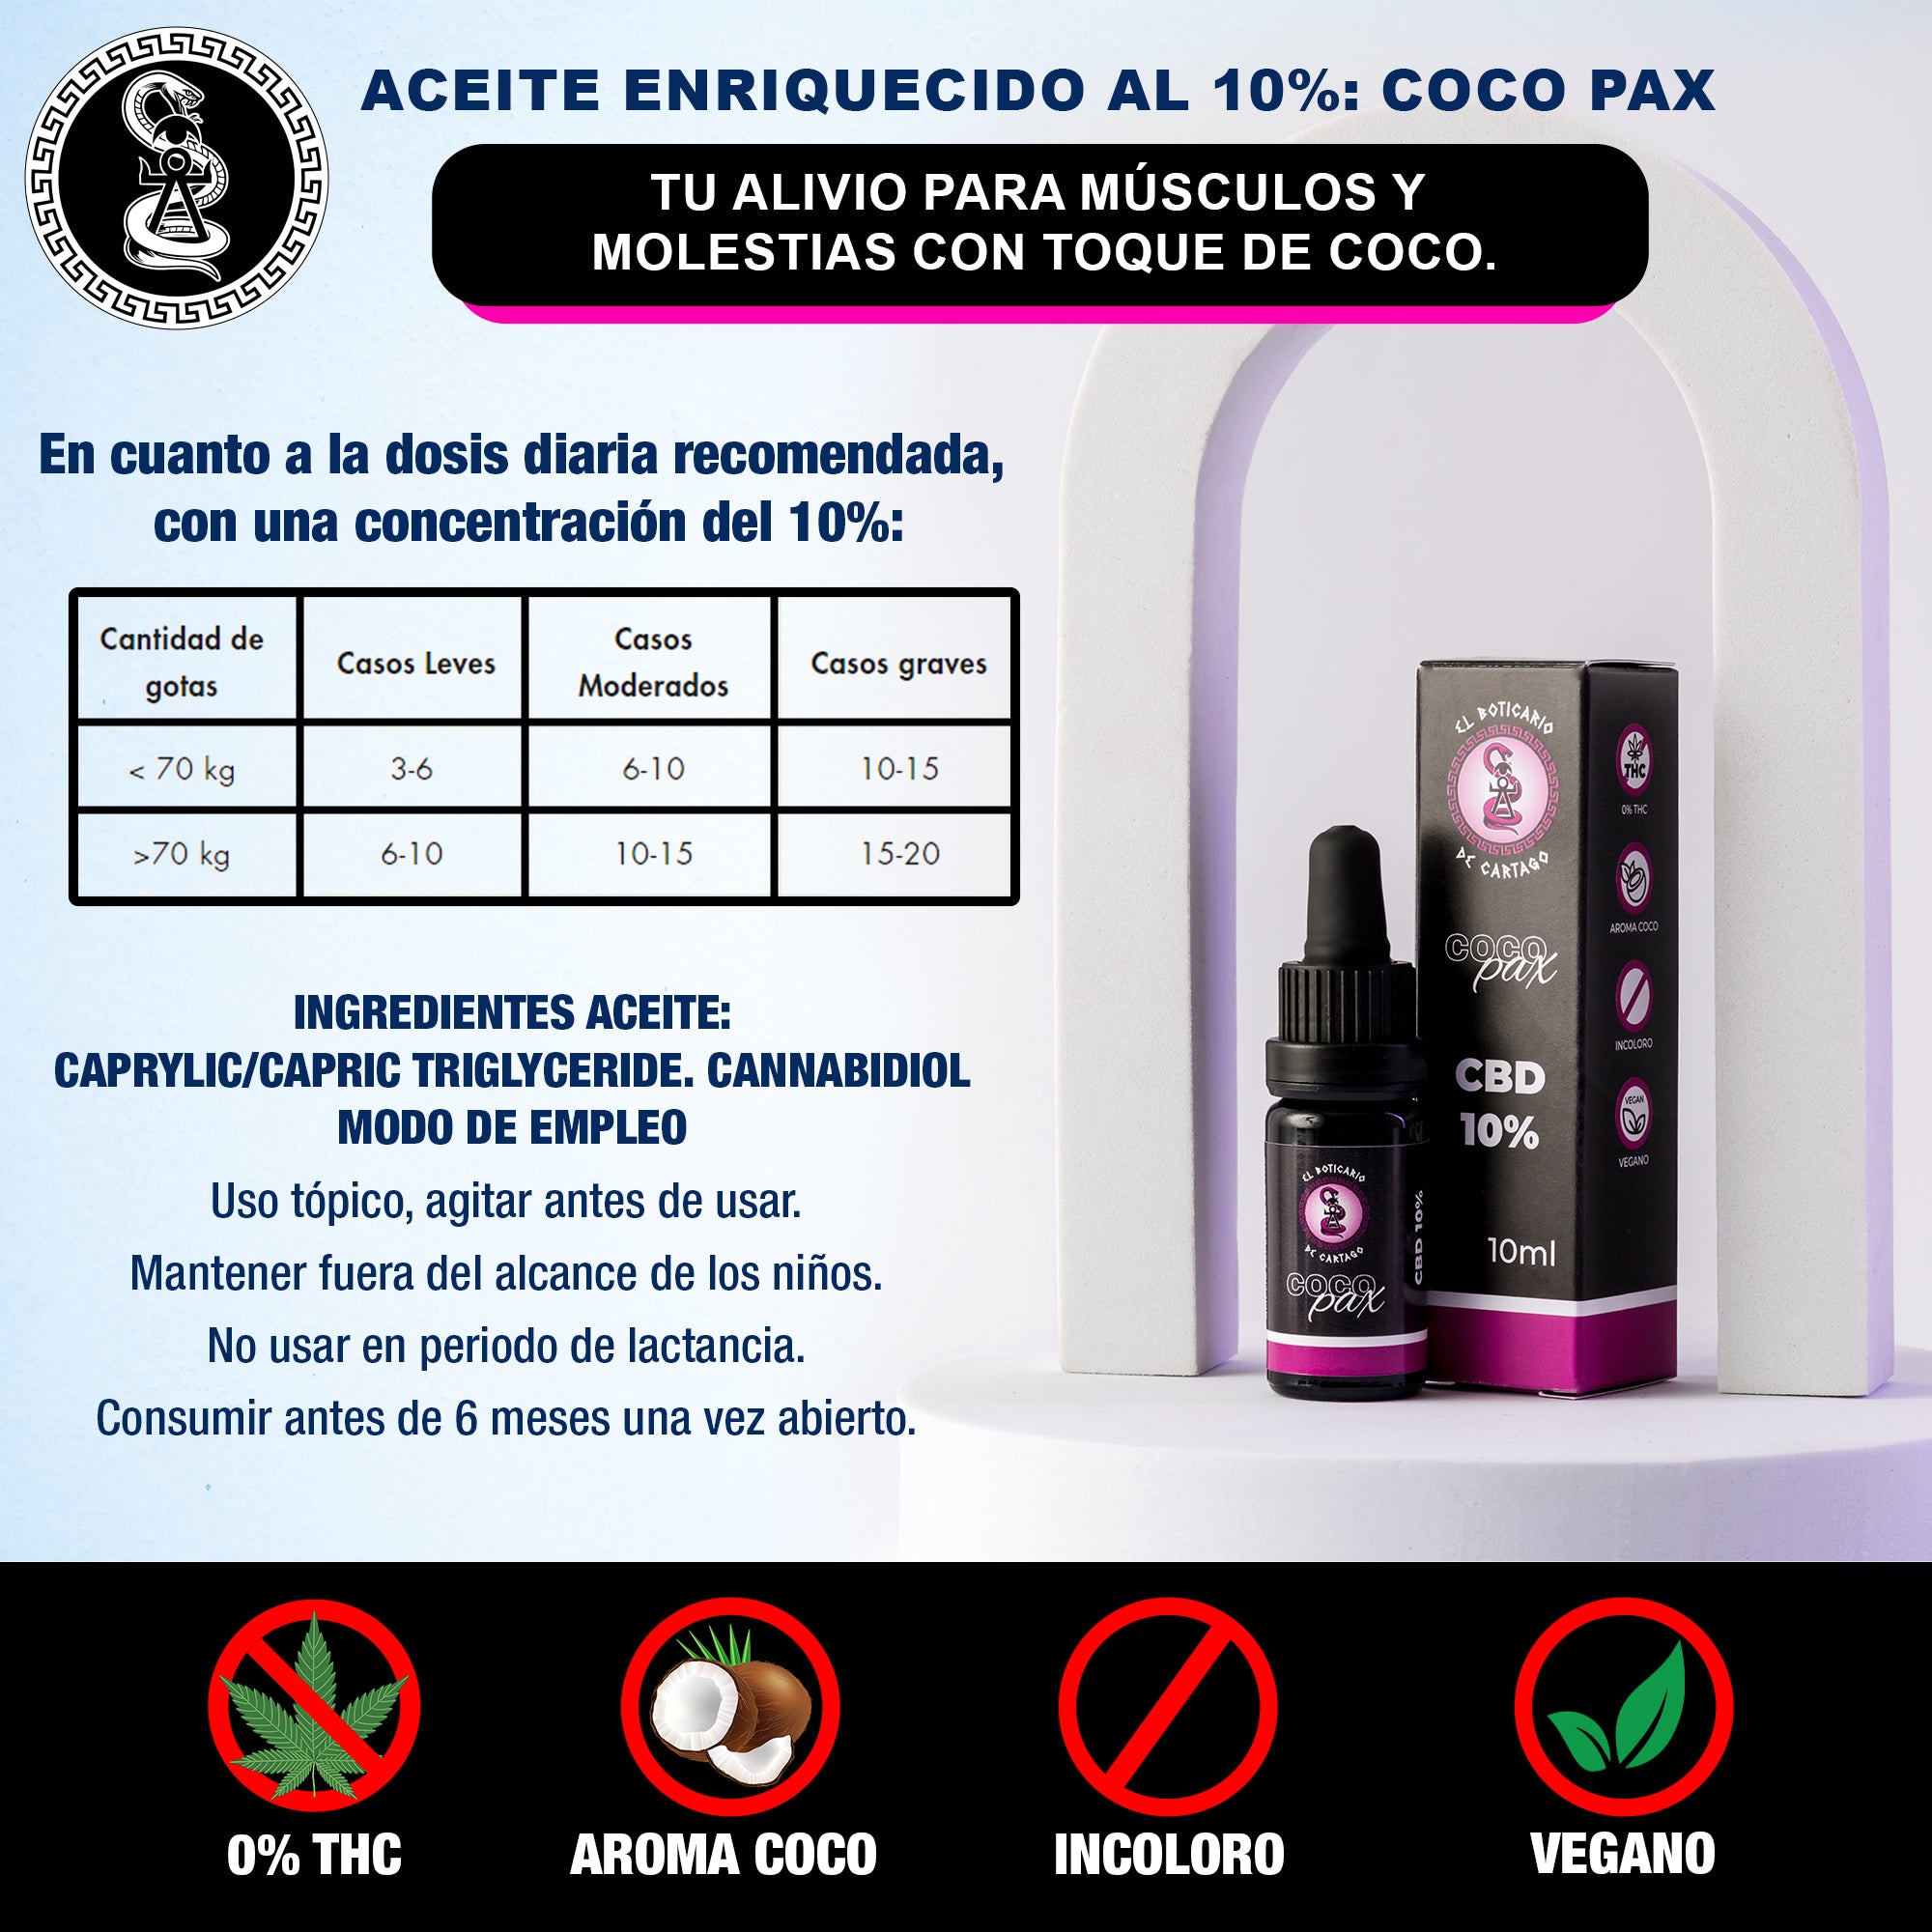 Aceite enriquecido al 10%: Coco Pax. Tu alivio para músculos y molestias con toque de coco.